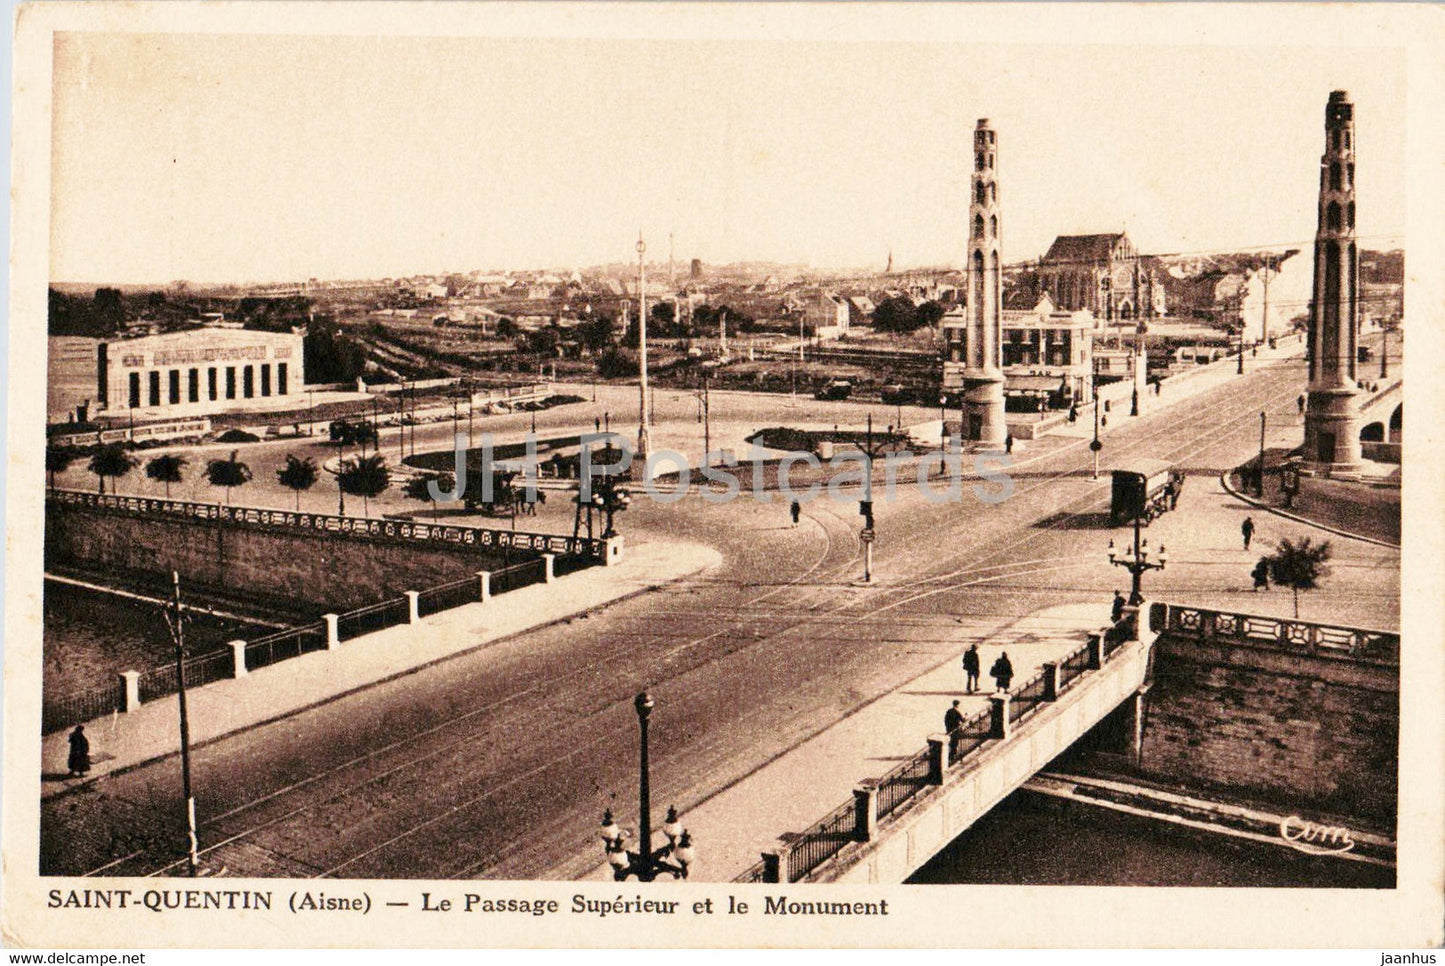 Saint Quentin - Le Passage Superieur et le Monument - old postcard - France - unused - JH Postcards